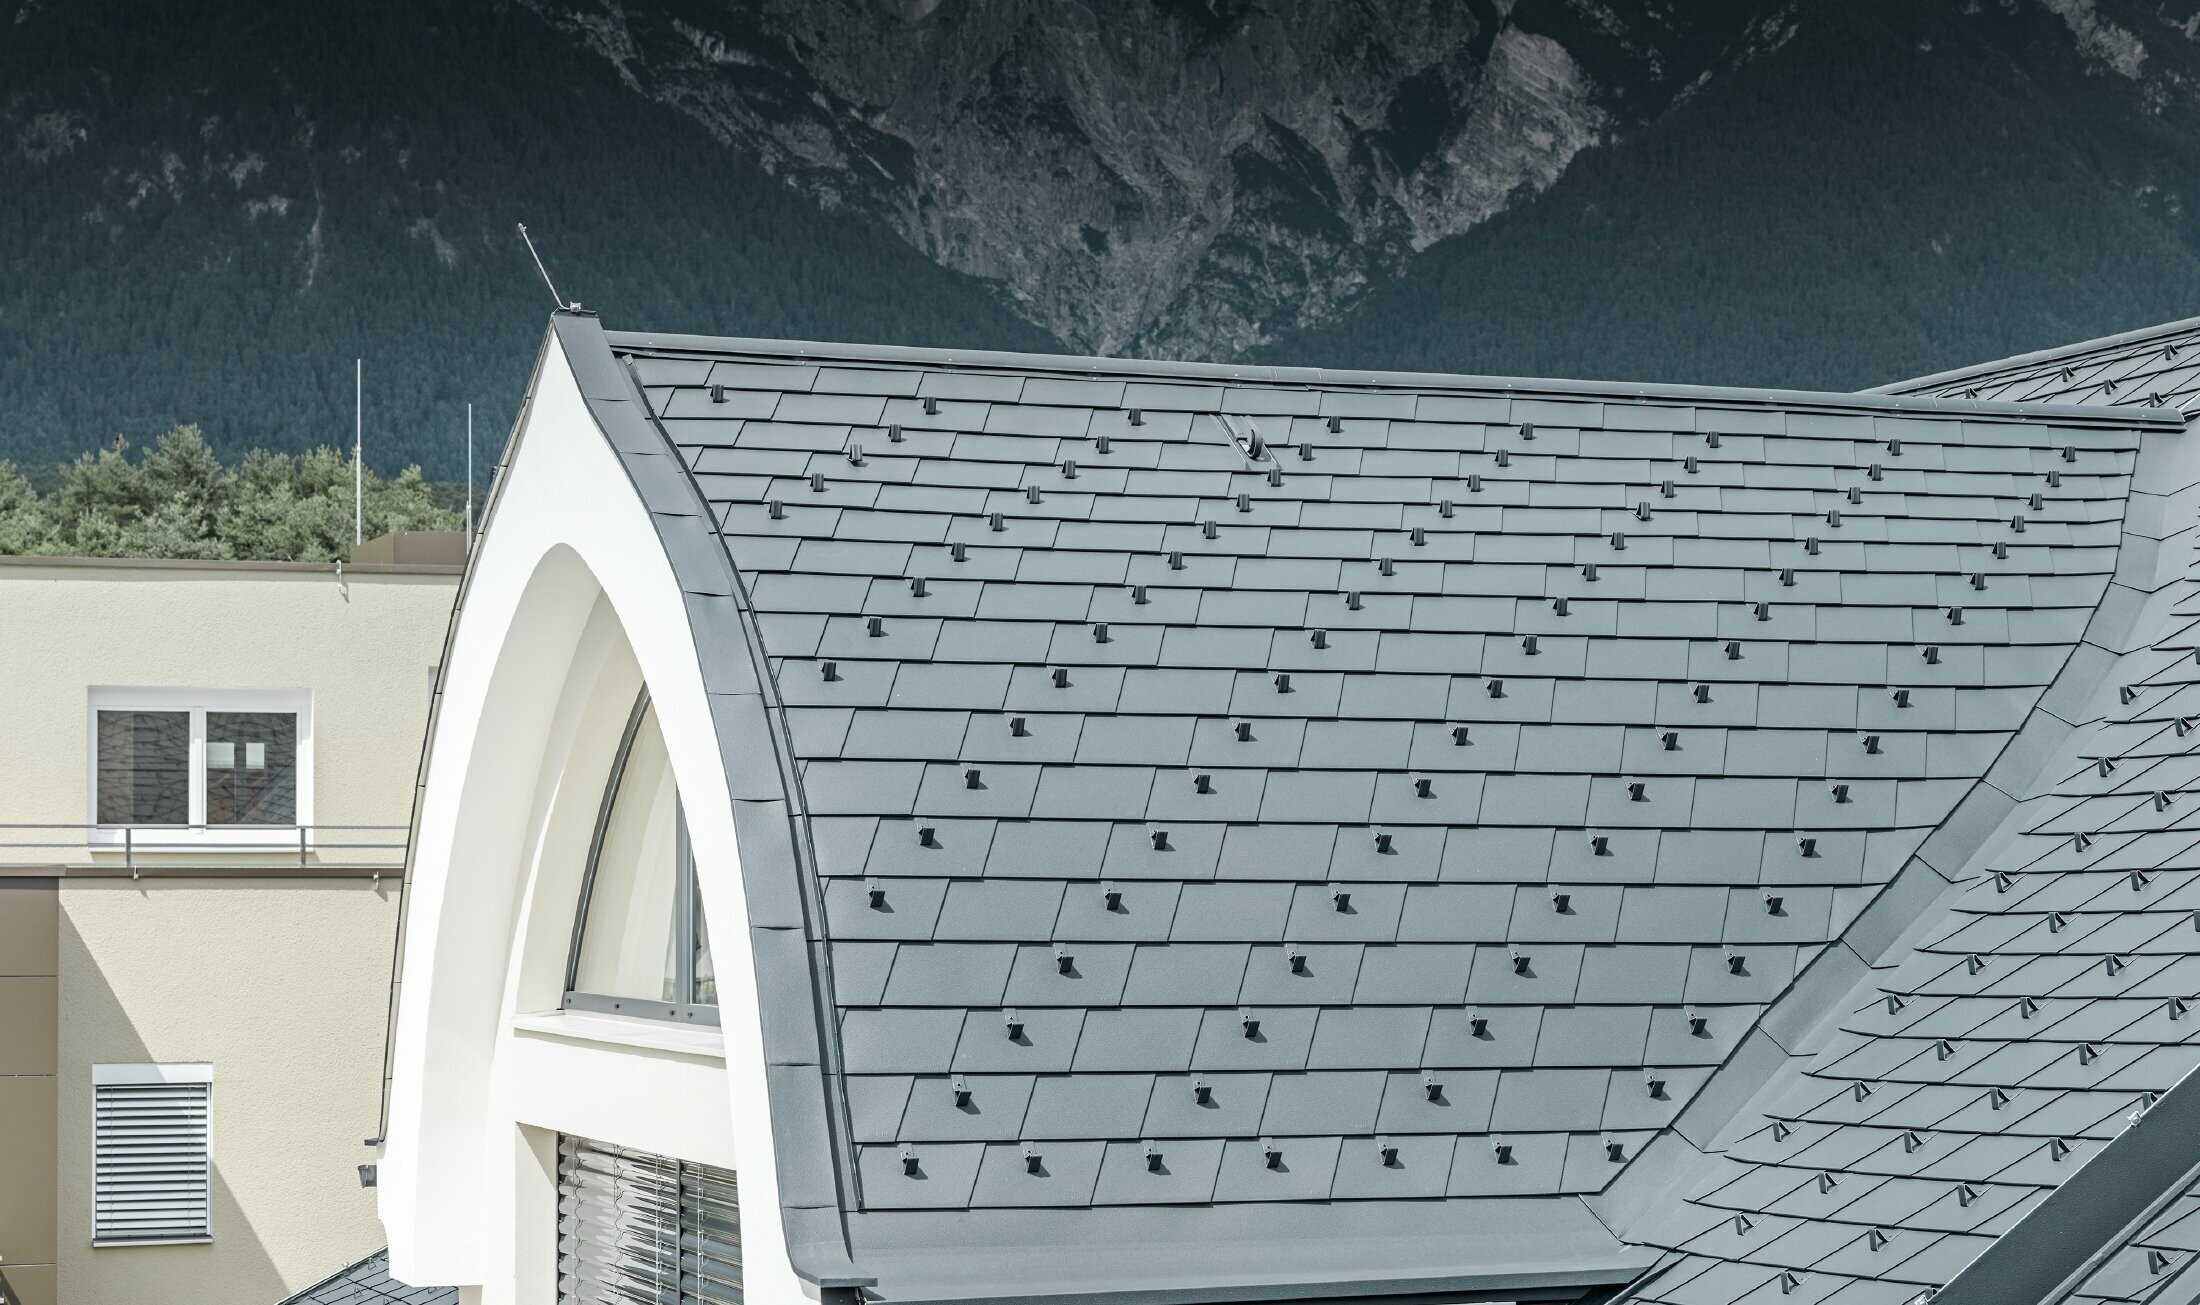 Detaljbild på takkupolen, täckt med takshingel i antracitgrått från PREFA. Takkupolen är här utformad som en solfjäder.